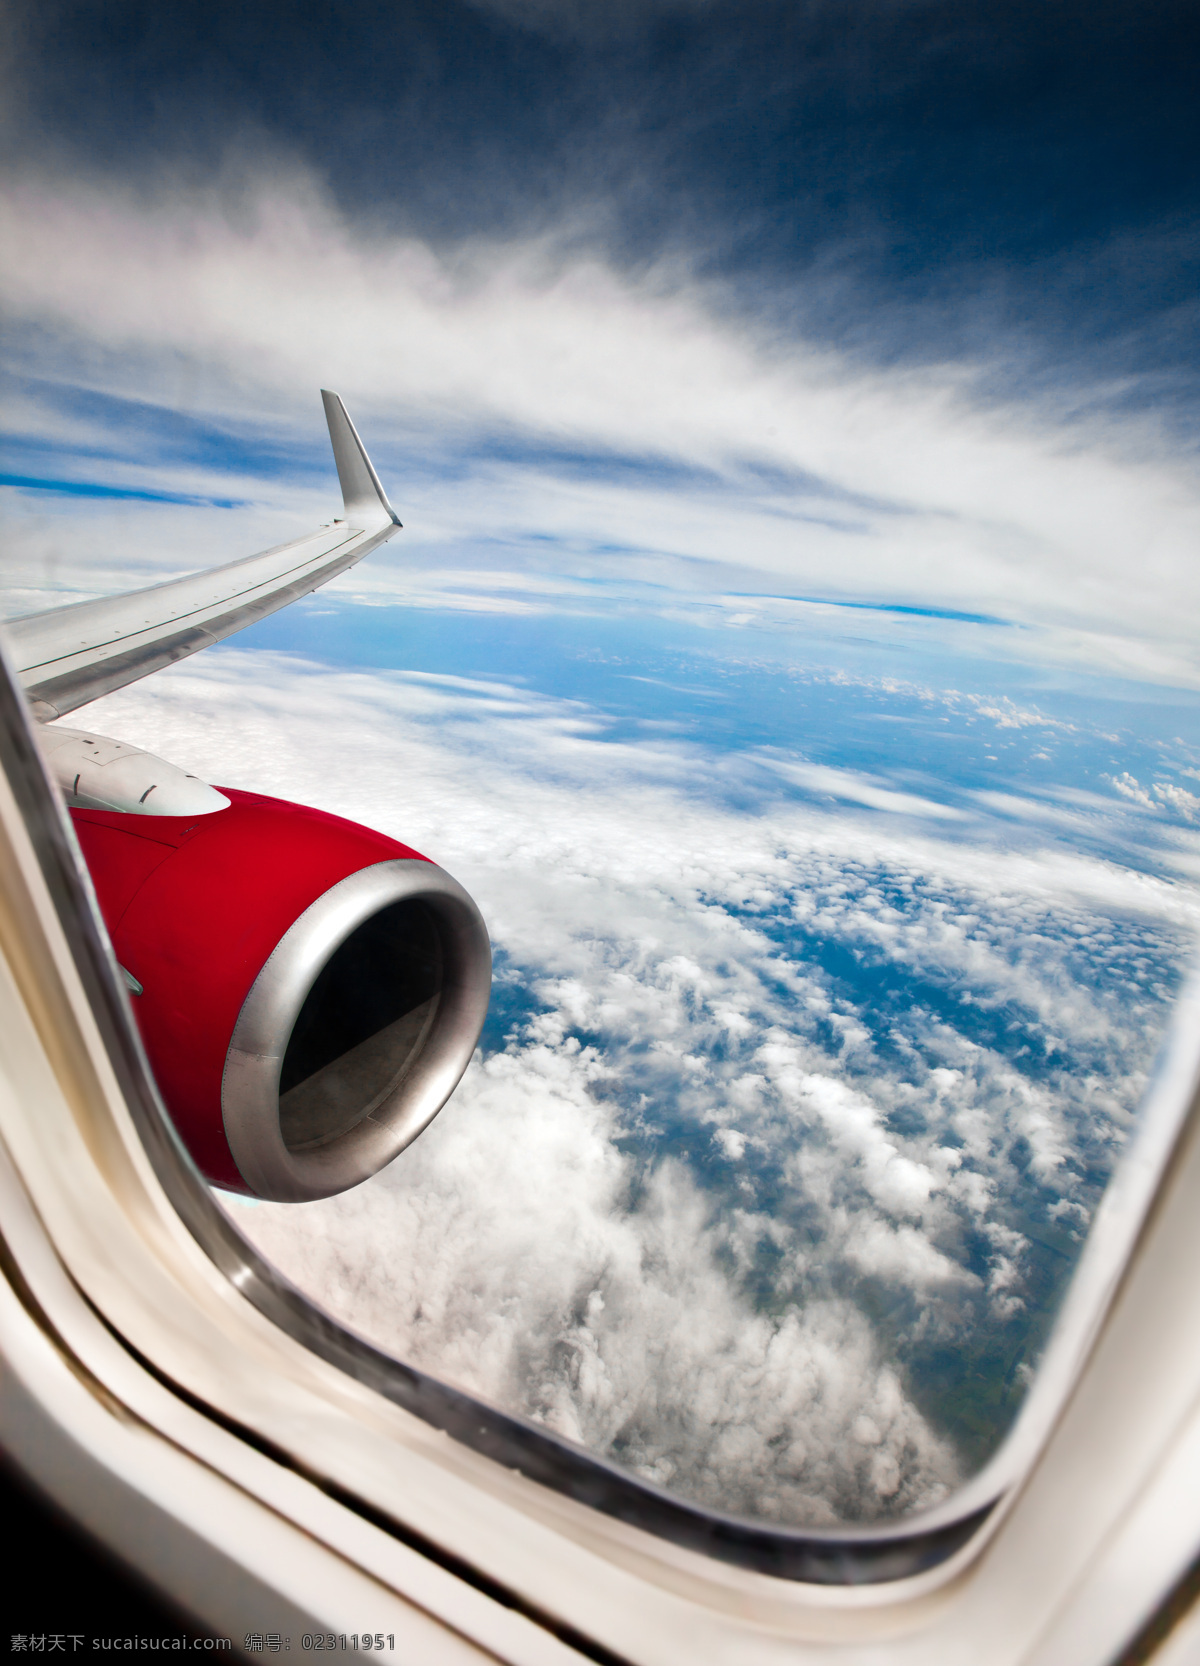 飞机窗外 飞机外 飞机窗 玻璃 窗外 窗外天气 晴天 多云 现代科技 交通工具